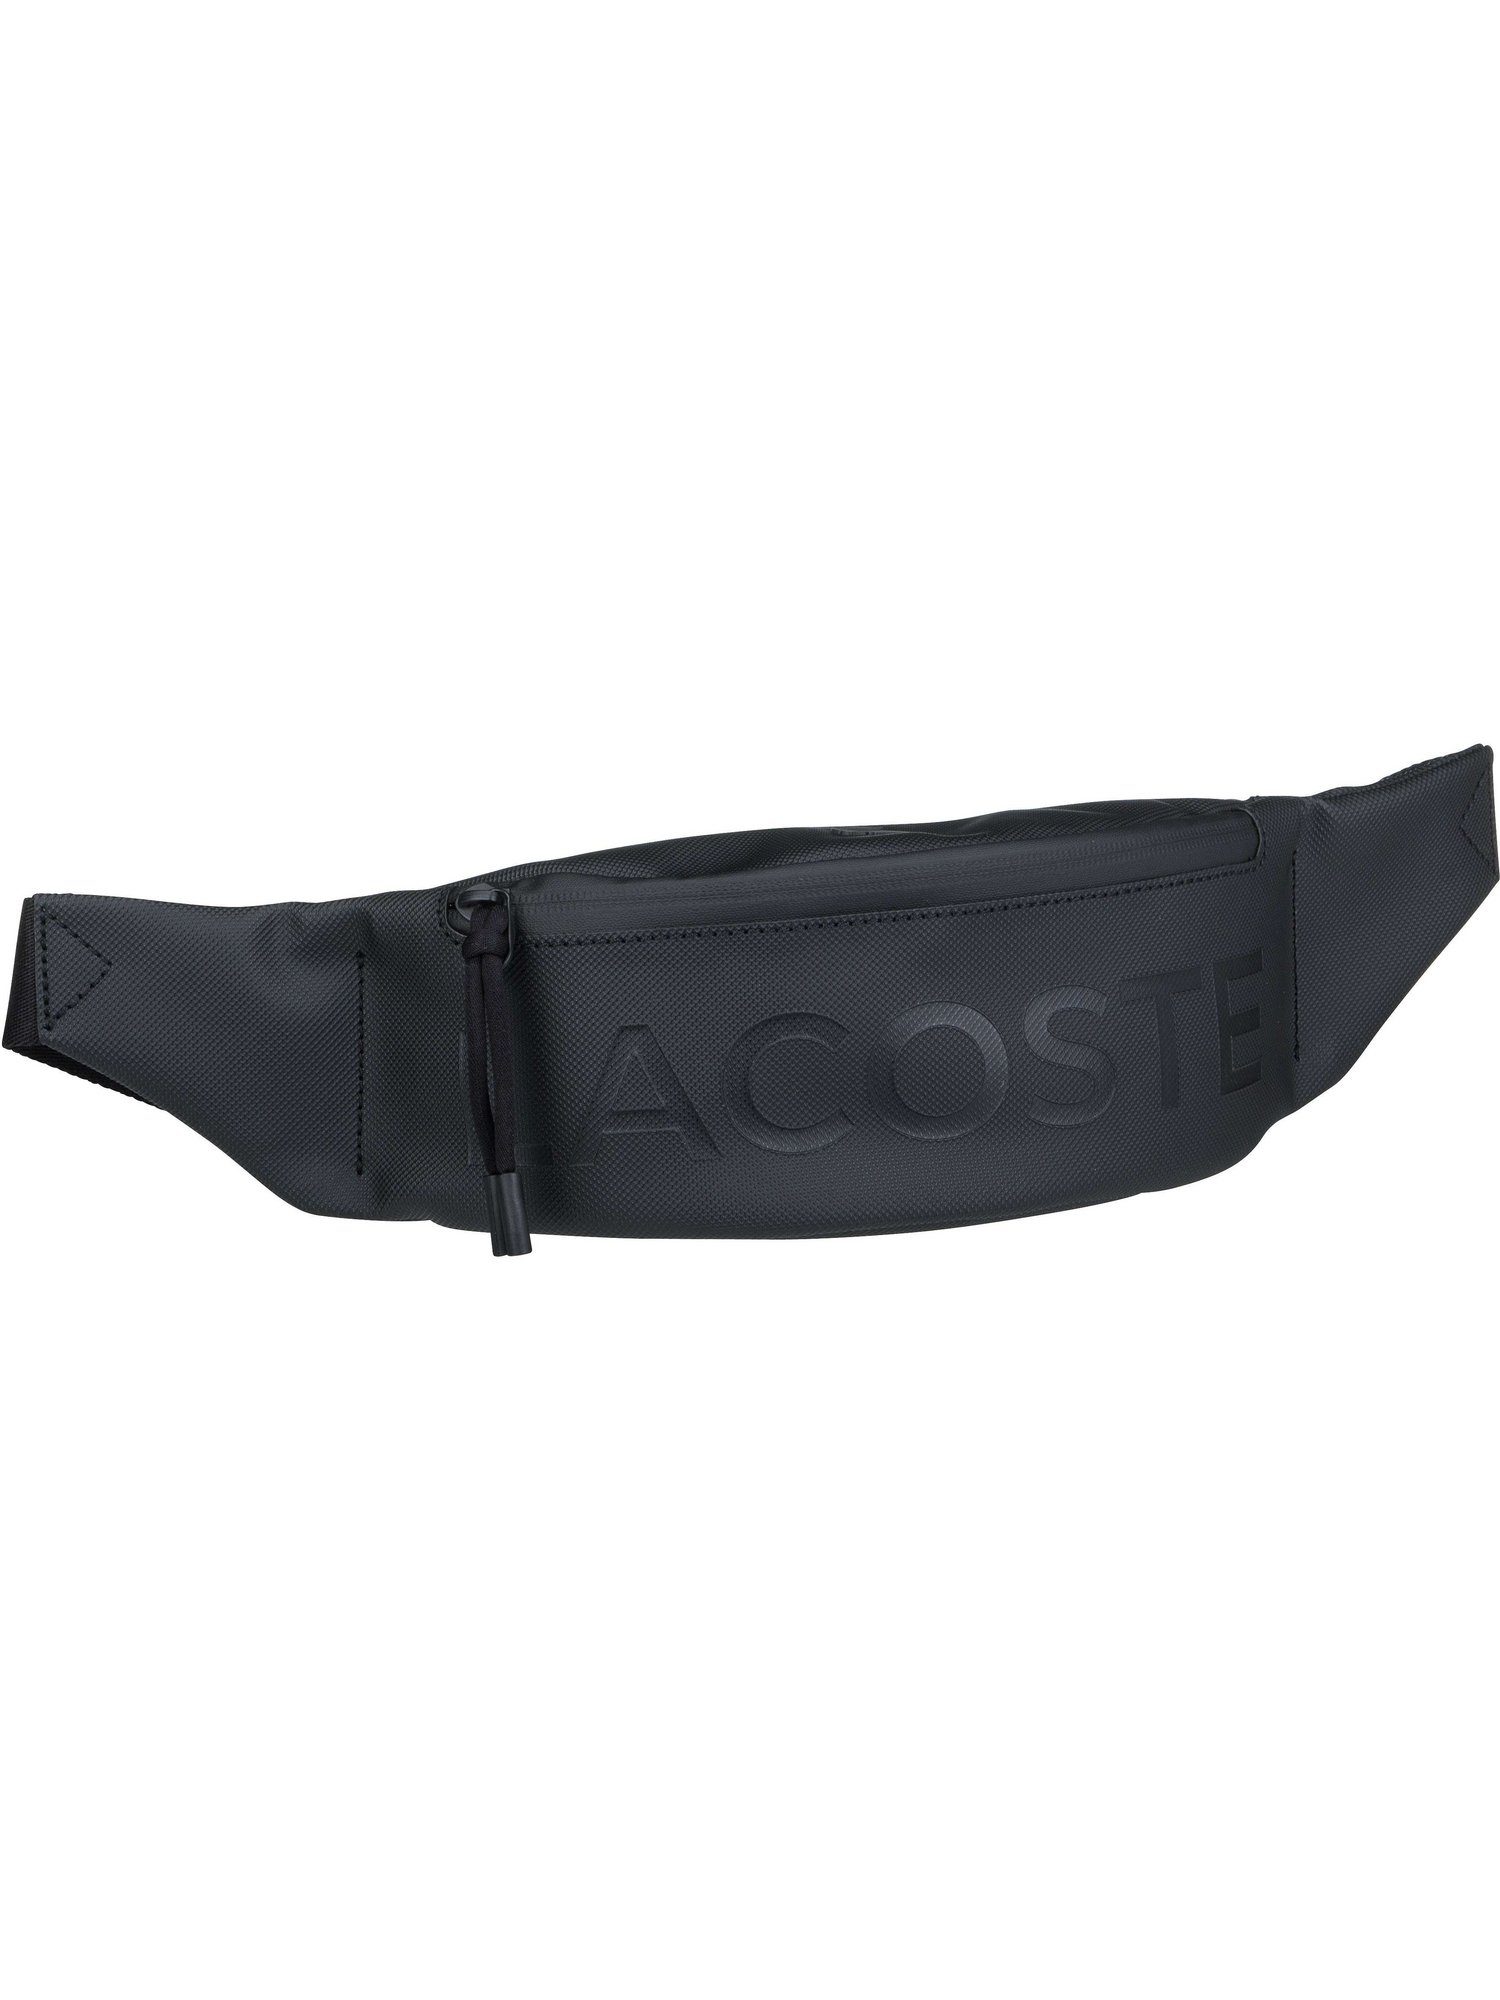 Lacoste Gürteltasche »L.12.12 Concept Waistbag 3085« online kaufen | OTTO